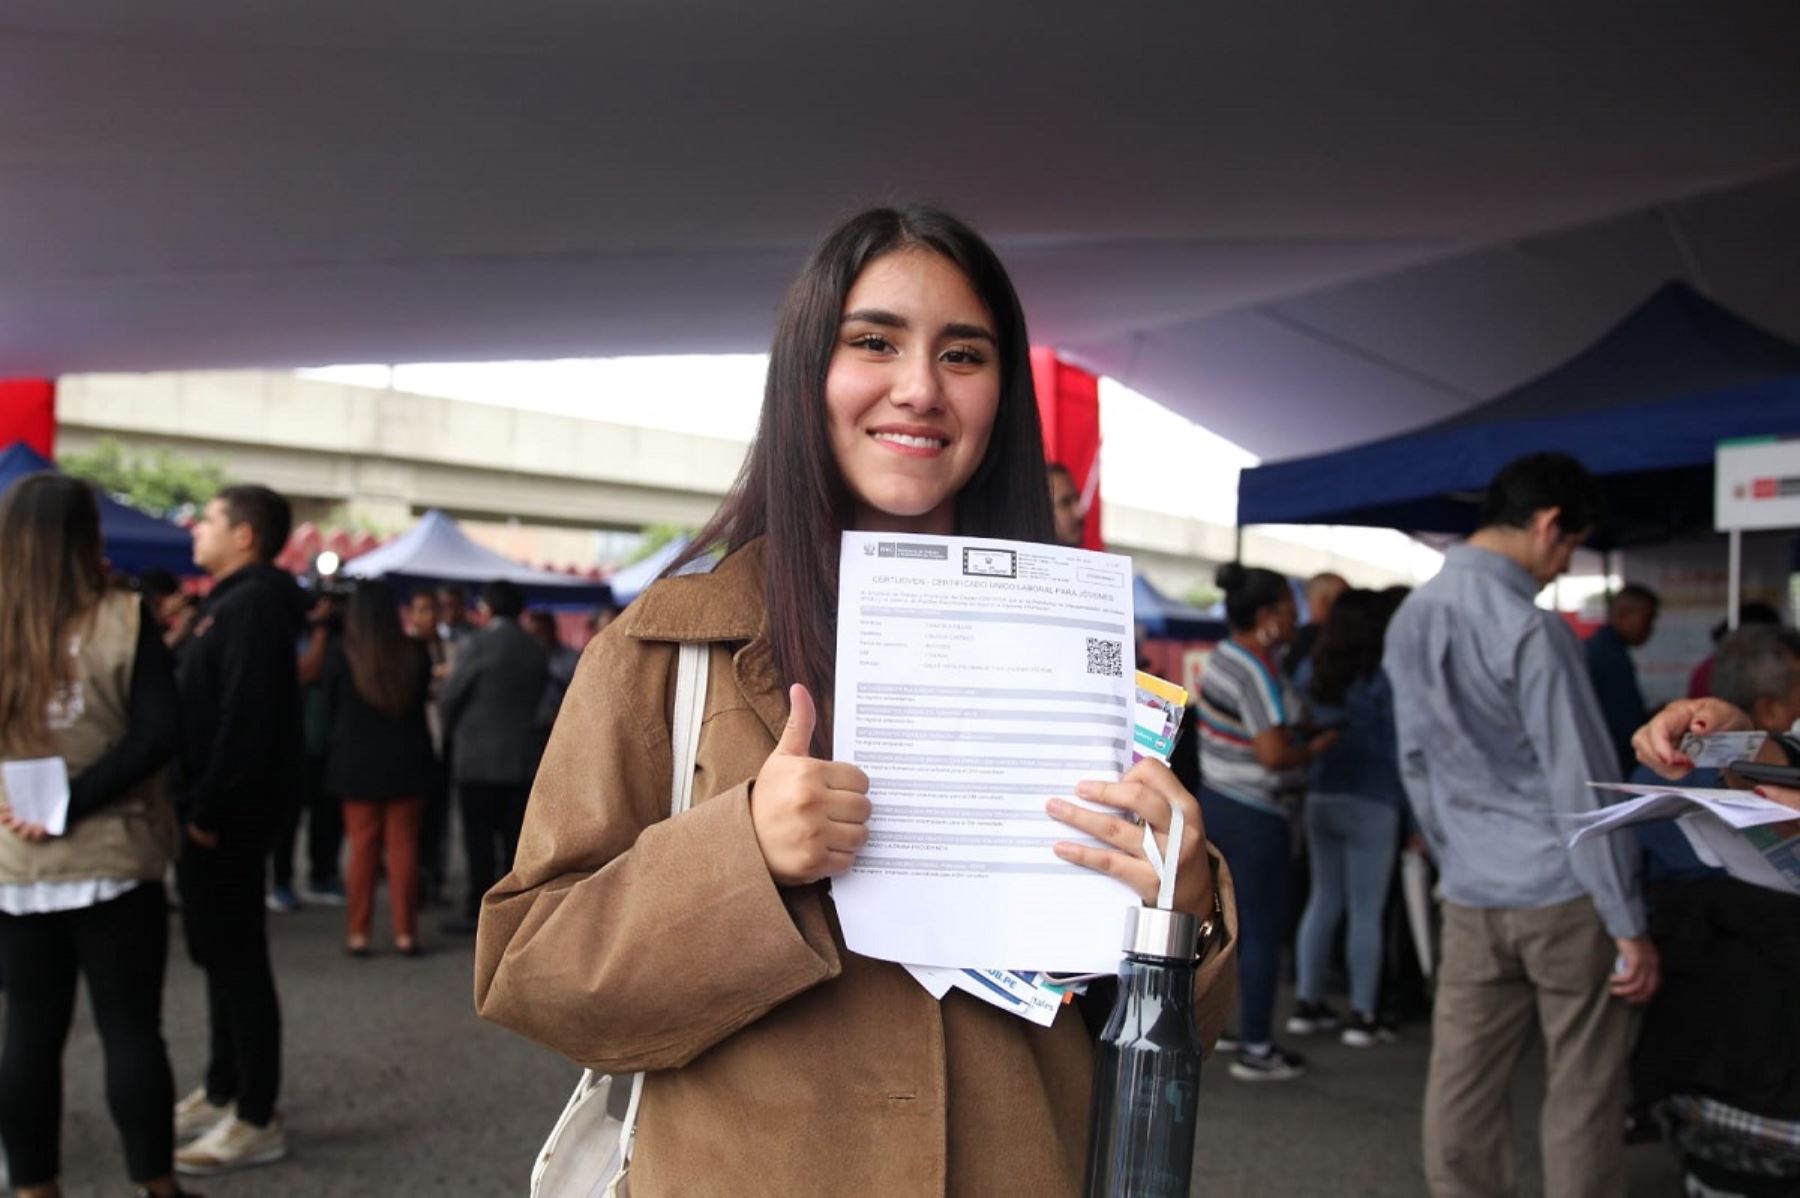 La Feria del empleo en San Luis permitió a jóvenes obtener su Certificado Único Laboral. Foto: Cortesía.